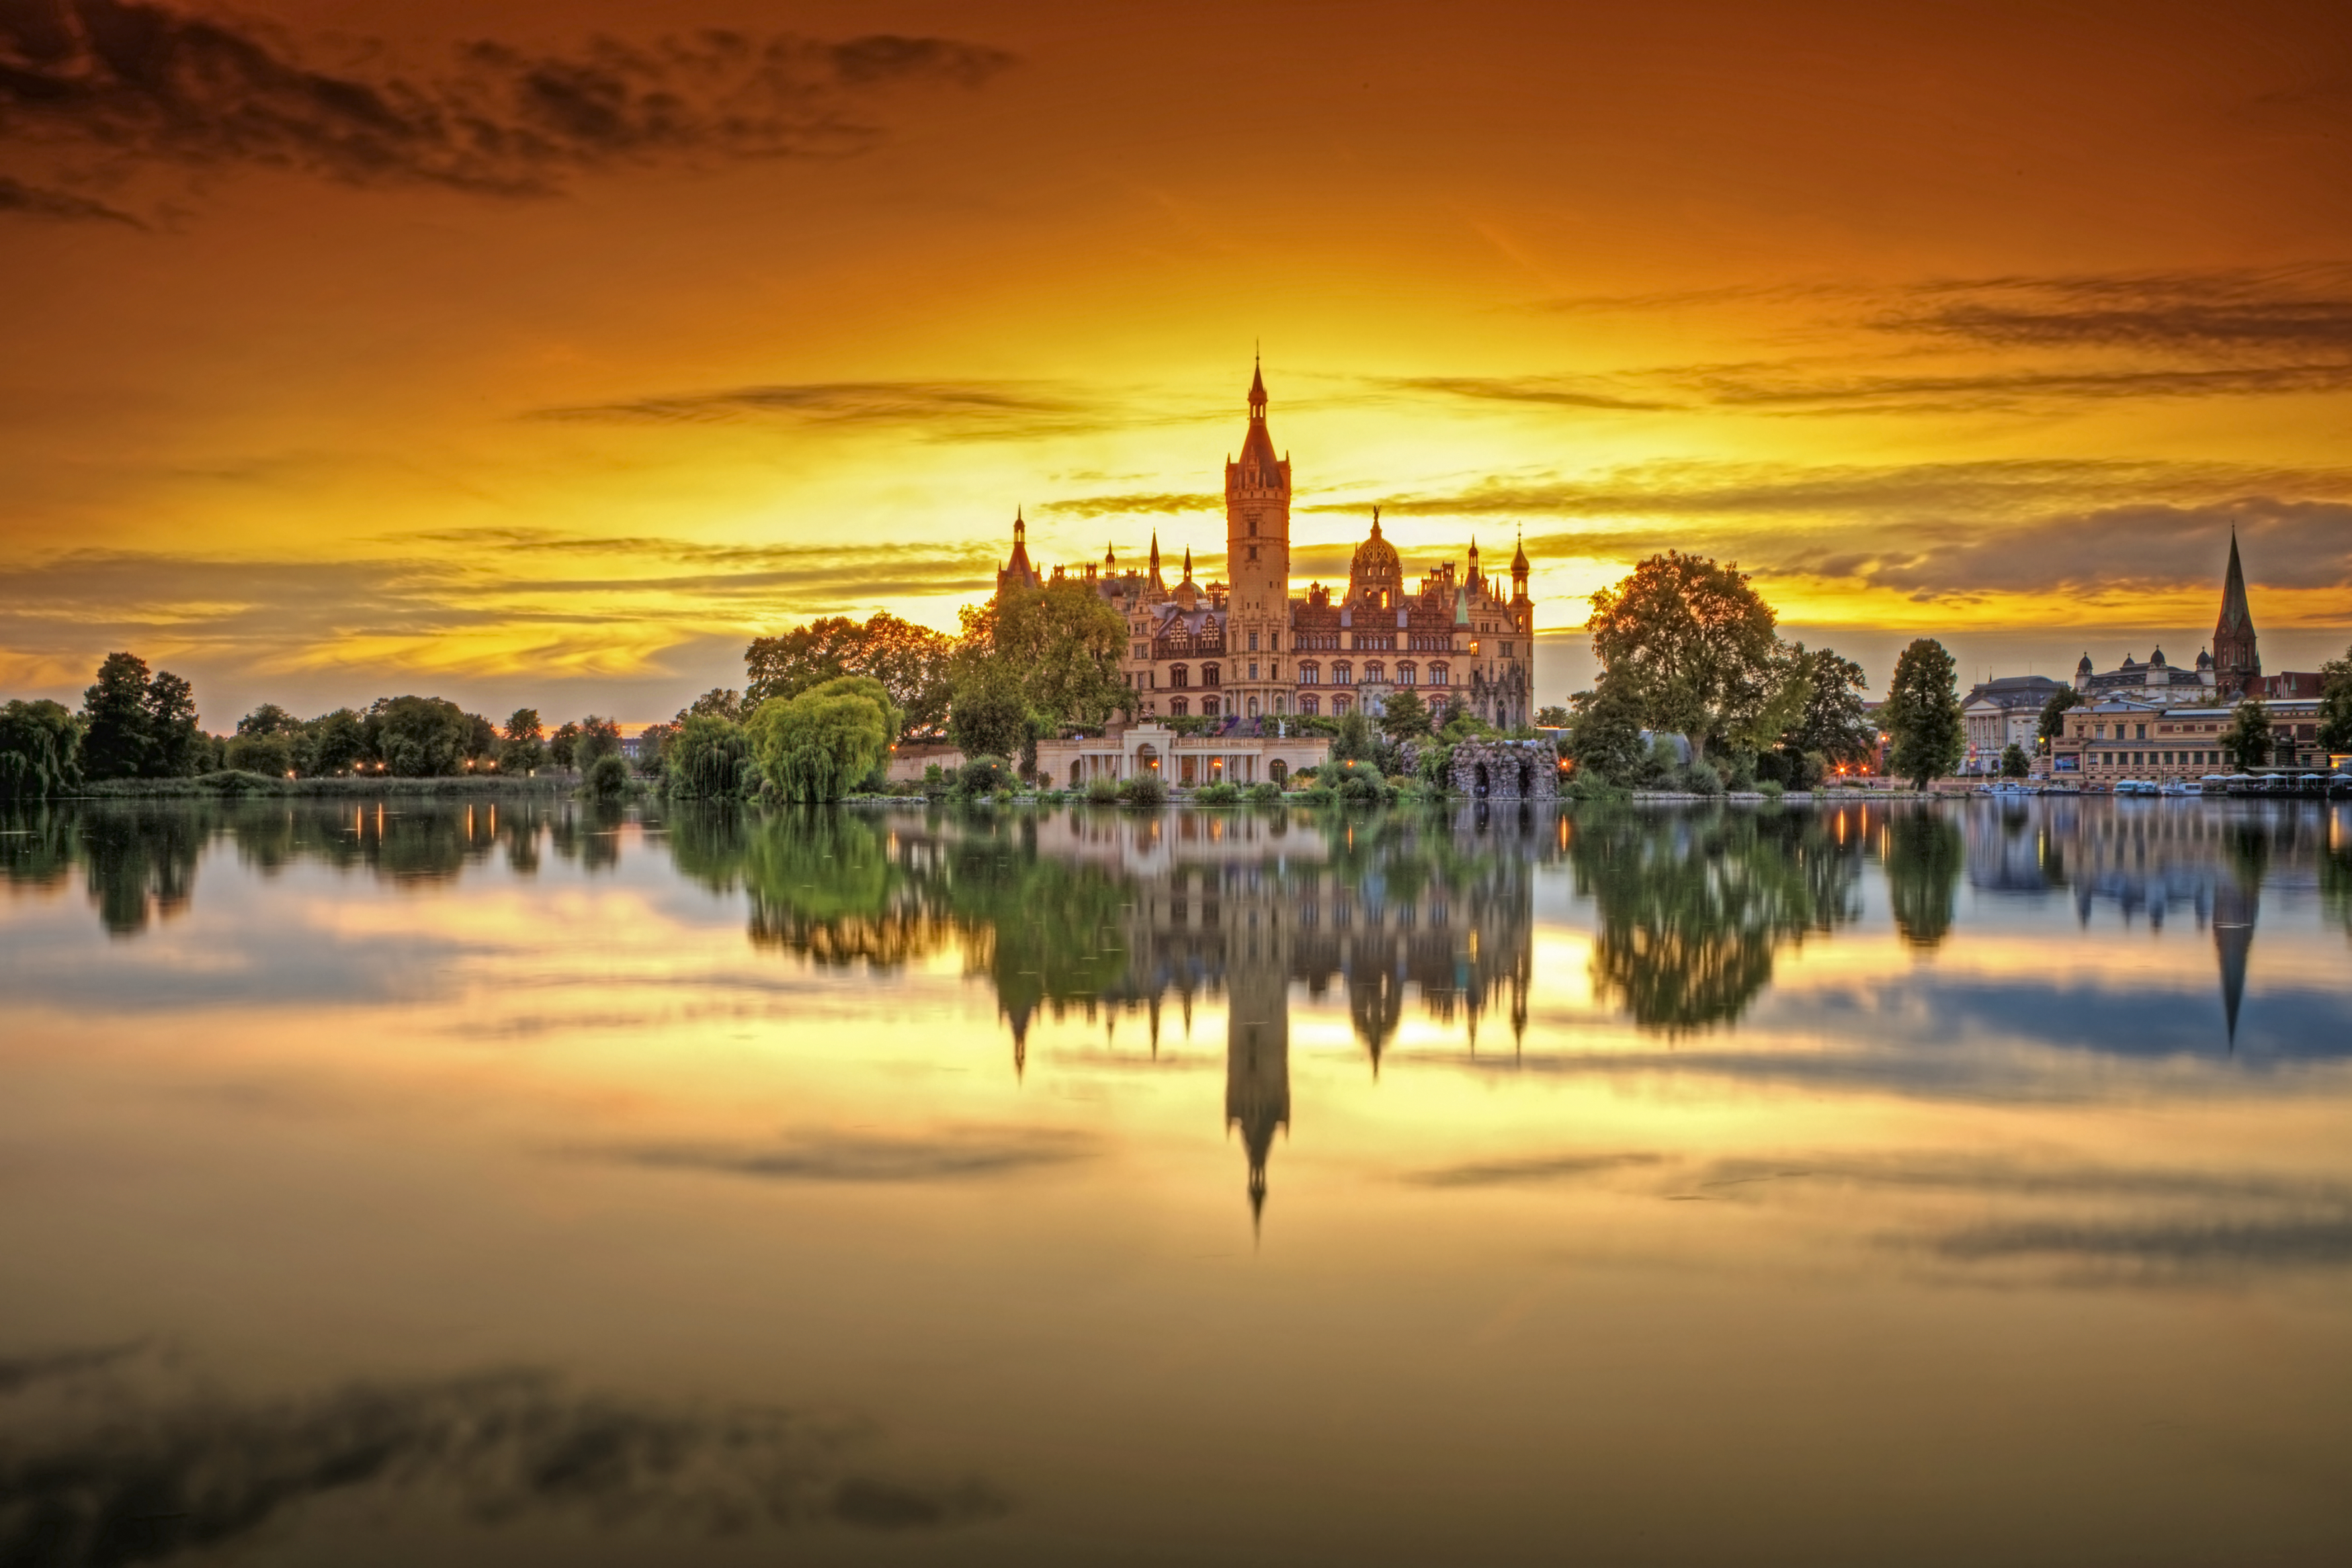 Sonnenuntergang am Schloss Schwerin © SSGK MV / Timm Allrich